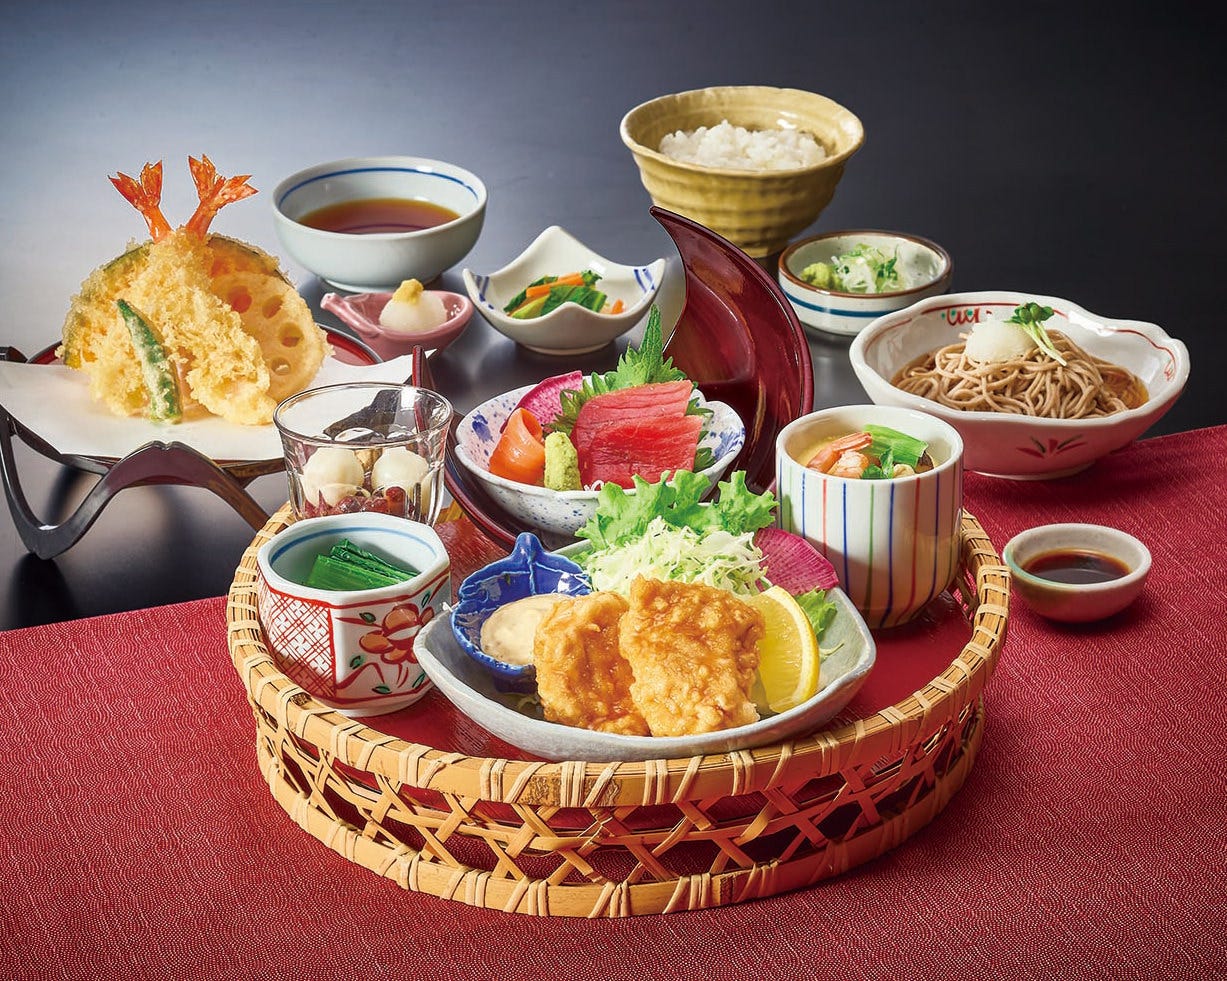 そば・寿司・天ぷらなどの当店自慢の和食を存分に楽しめる御膳